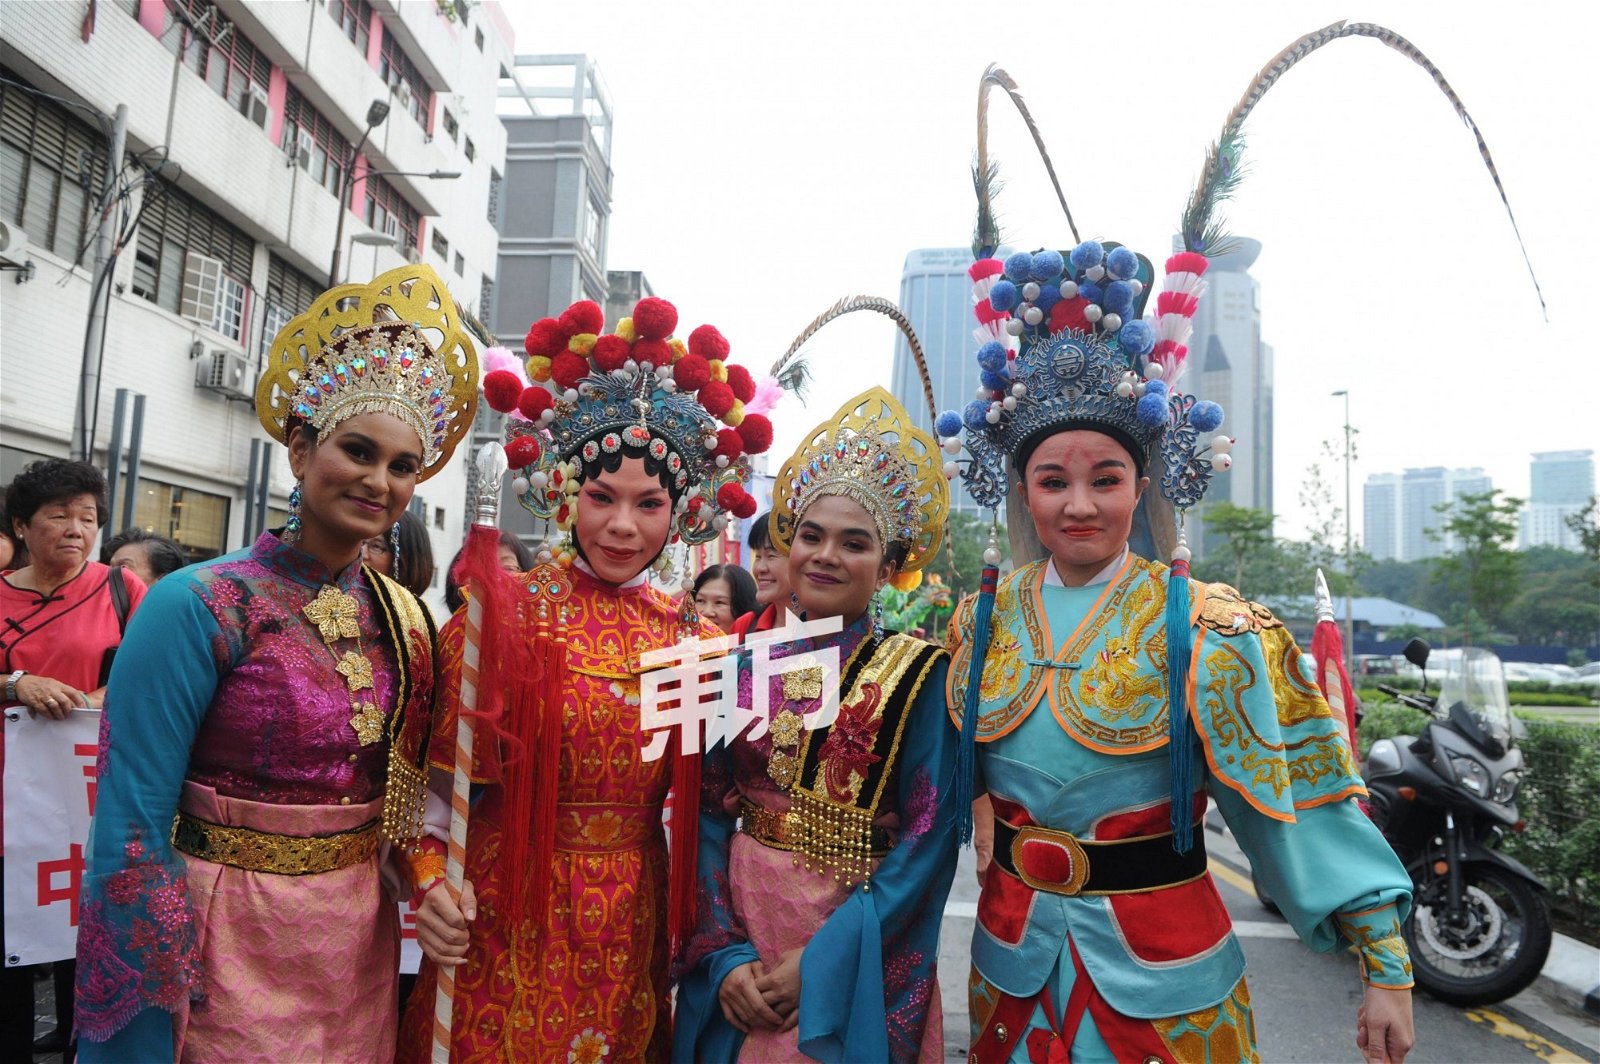 “马来西亚日·老街走月”活动汇 聚了各族的民间传统文化表演，如 粤剧、潮剧、马来传统舞蹈、印度 祭祀乐舞及婆罗洲舞蹈等，真正反 映出我国多元文化的交流。